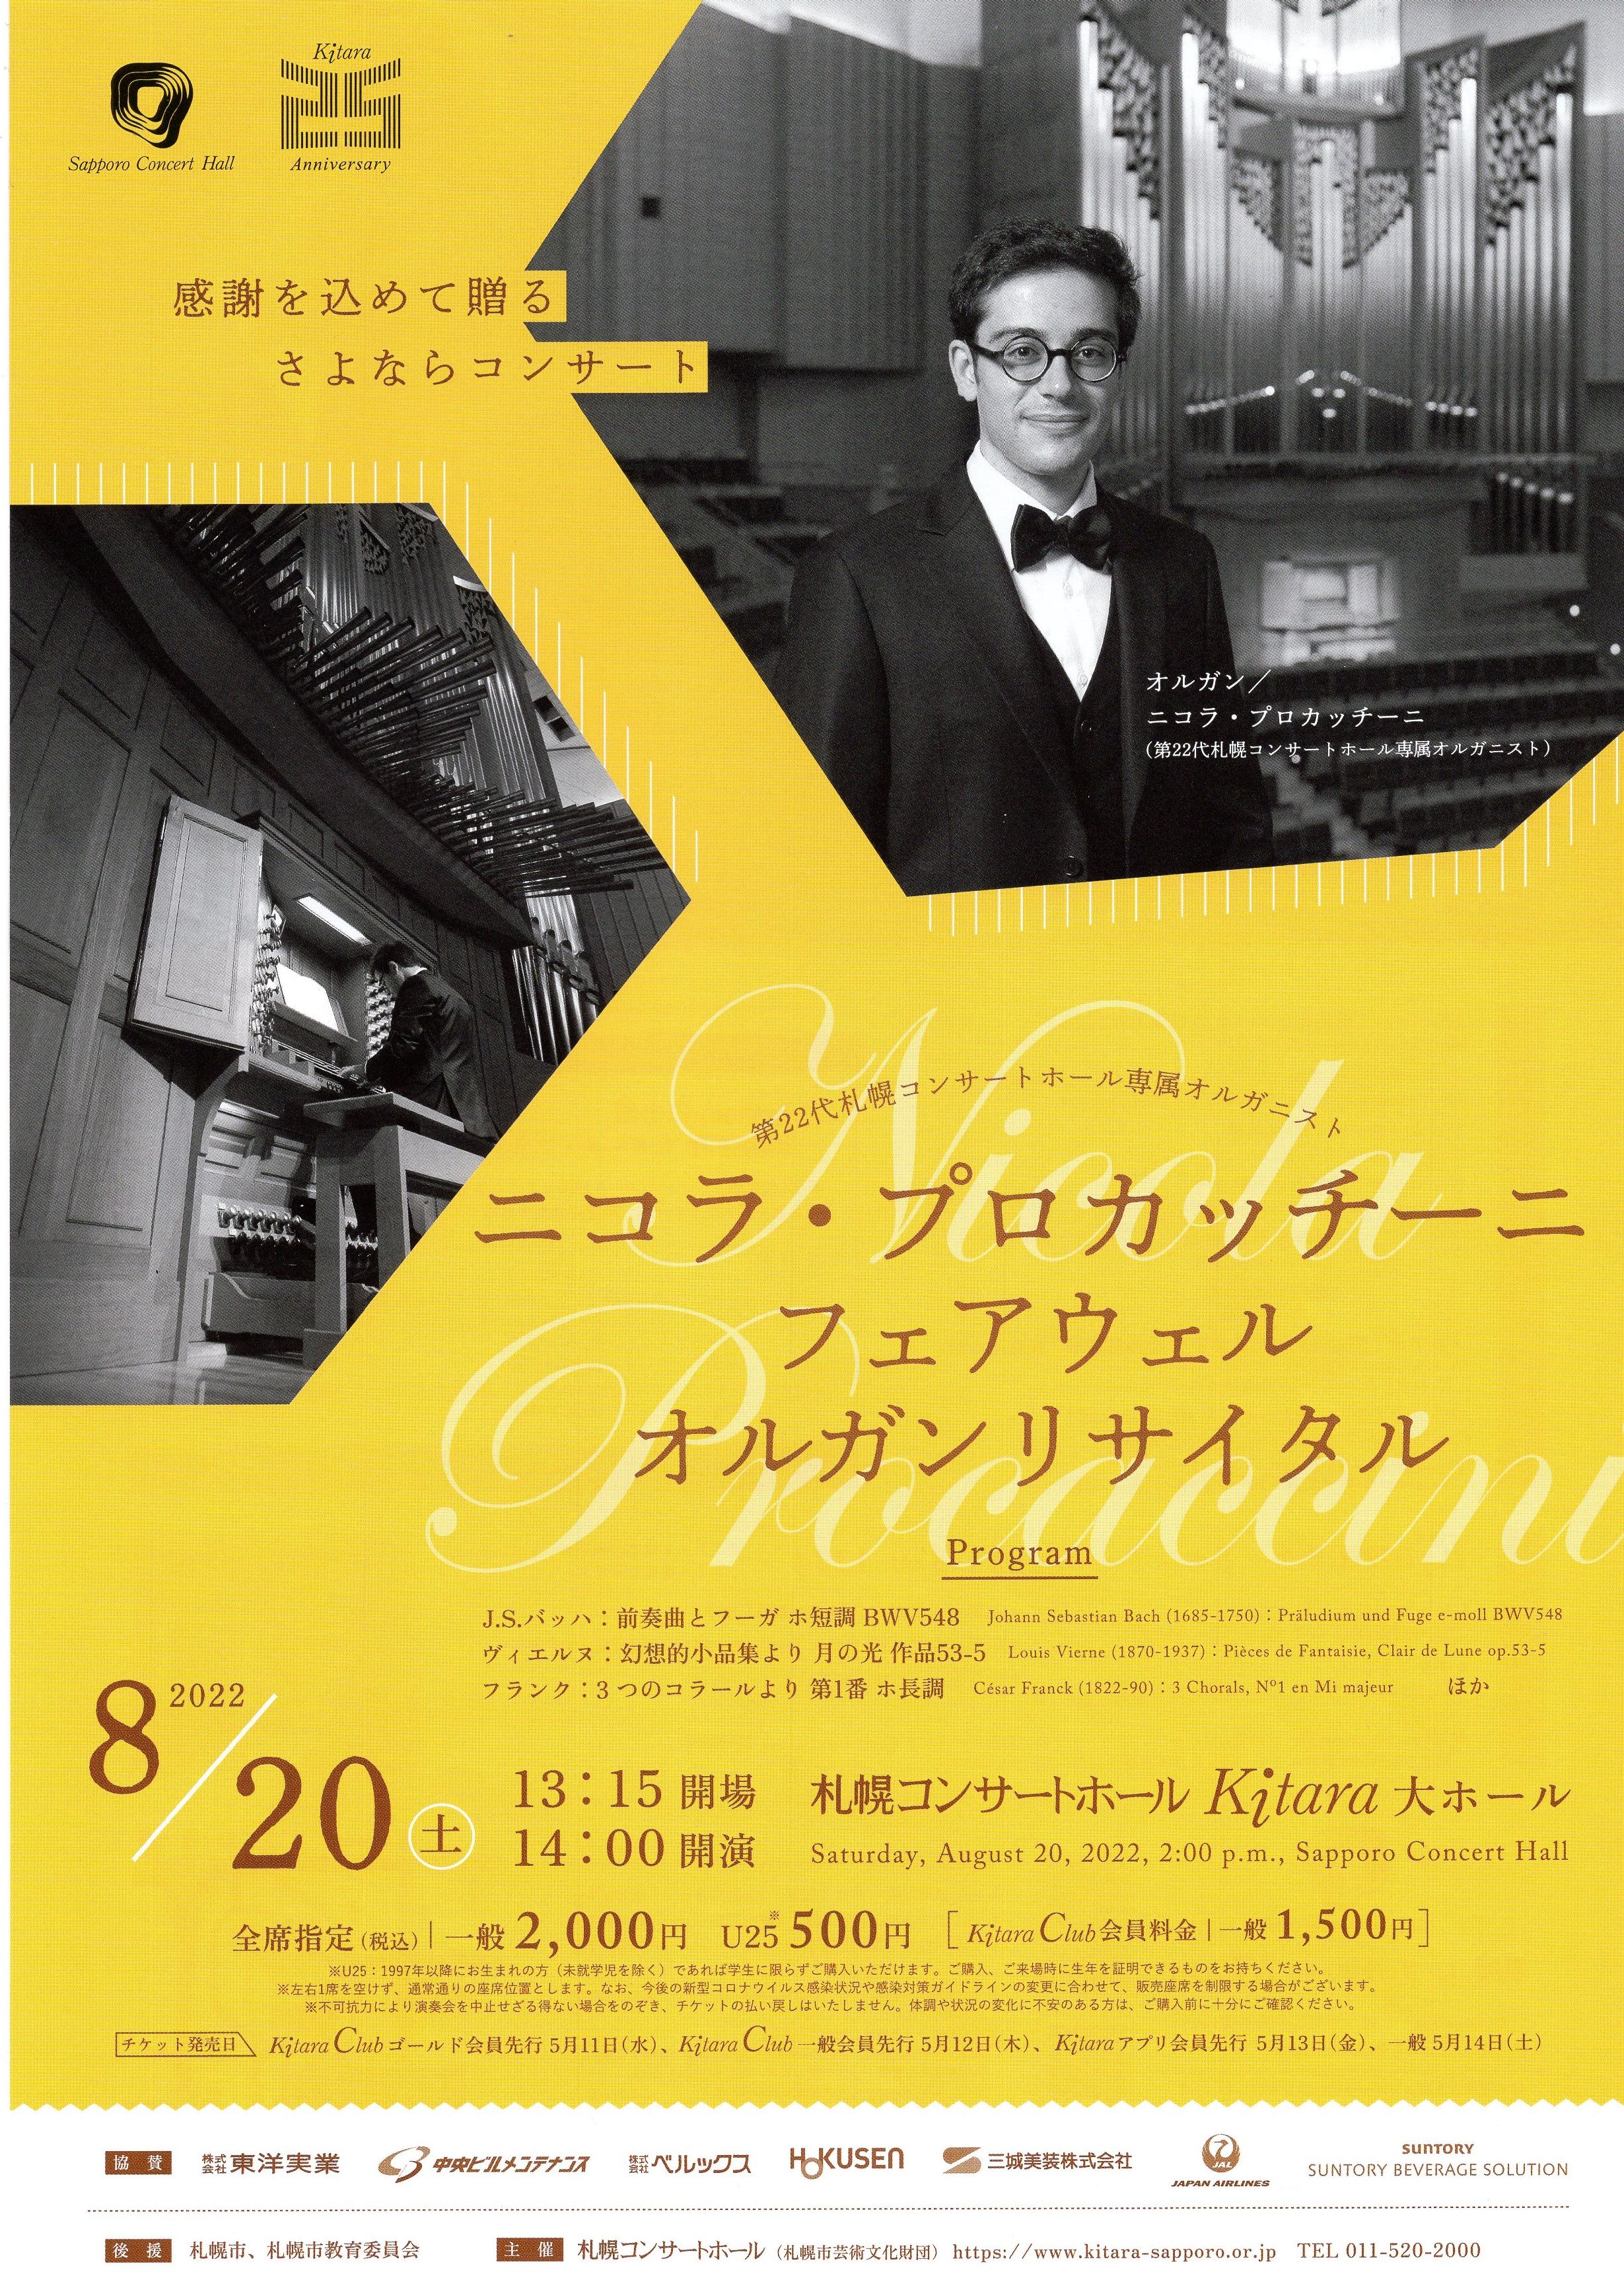 第22代札幌コンサートホール専属オルガニスト 二コラ・プロカッチーニ フェアウェルオルガンリサイタル イメージ画像